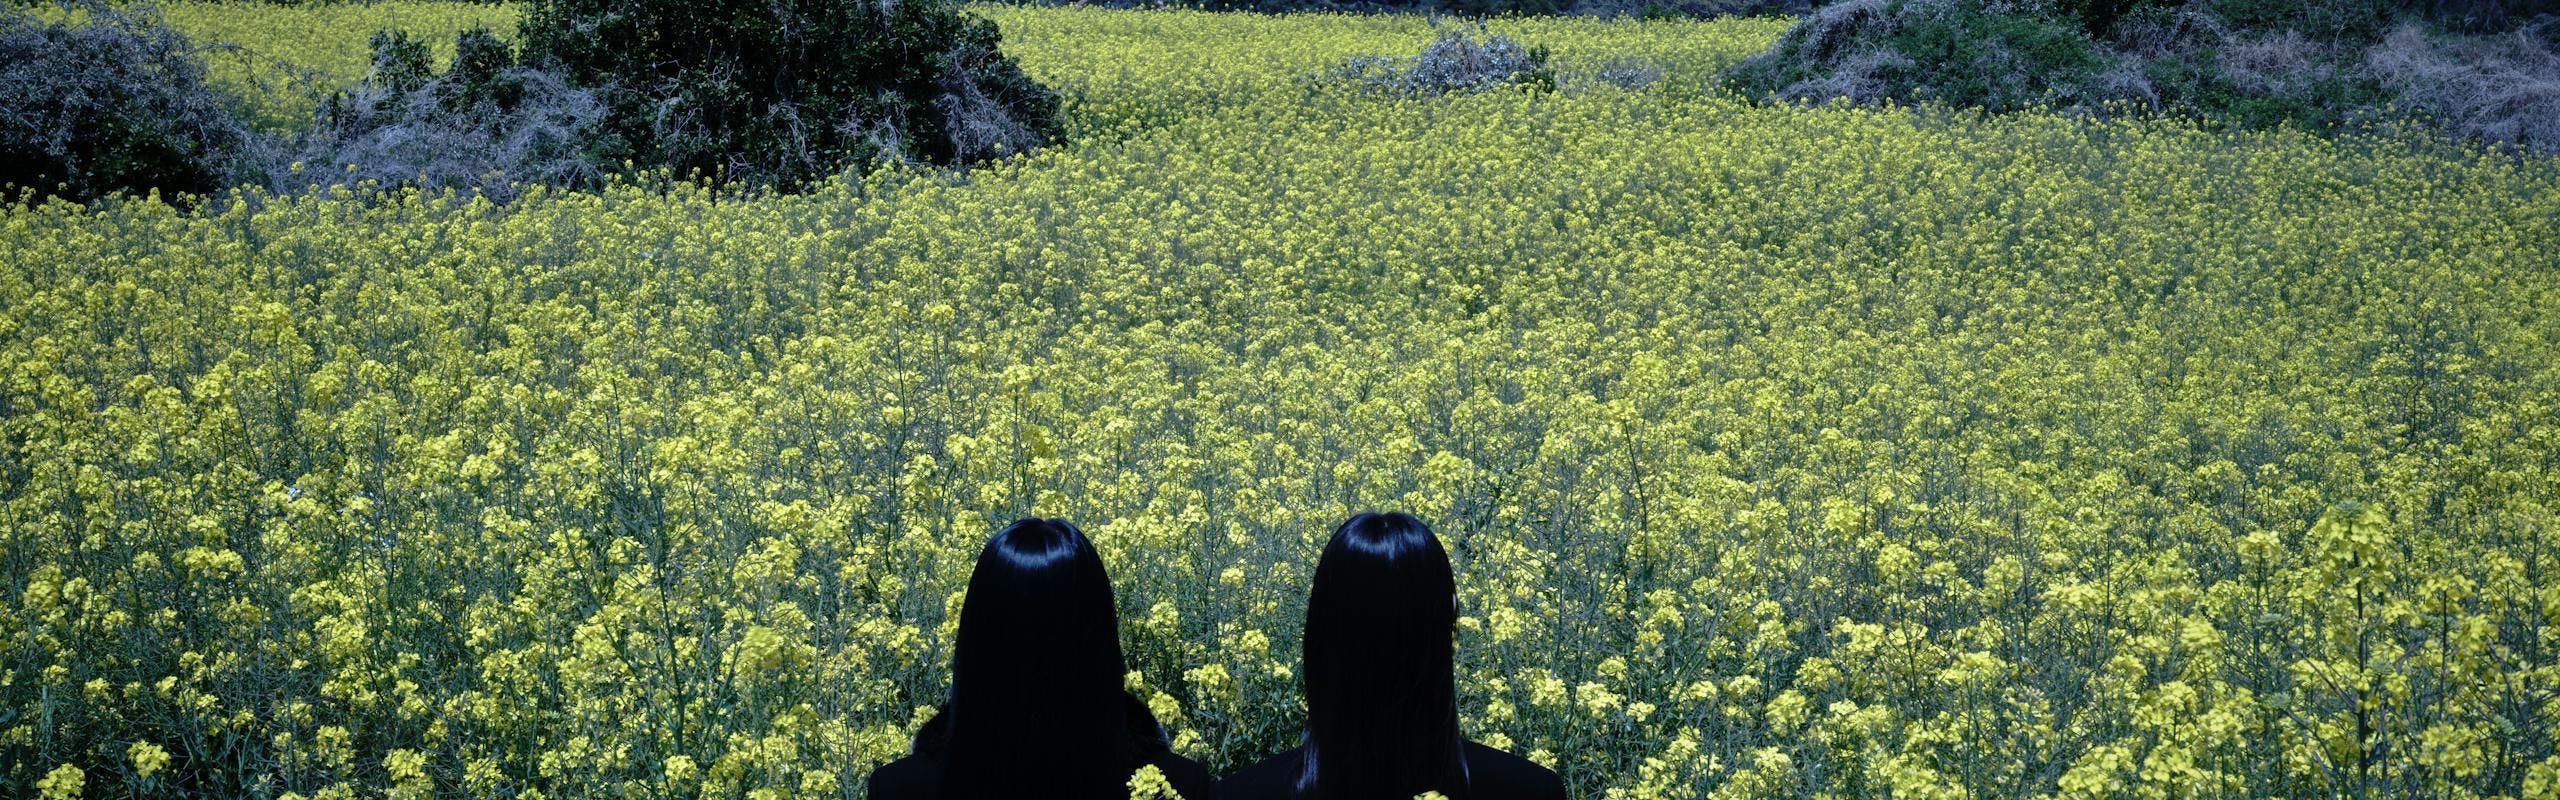 Daesung Lee Saint Laurent photo of people in flowers